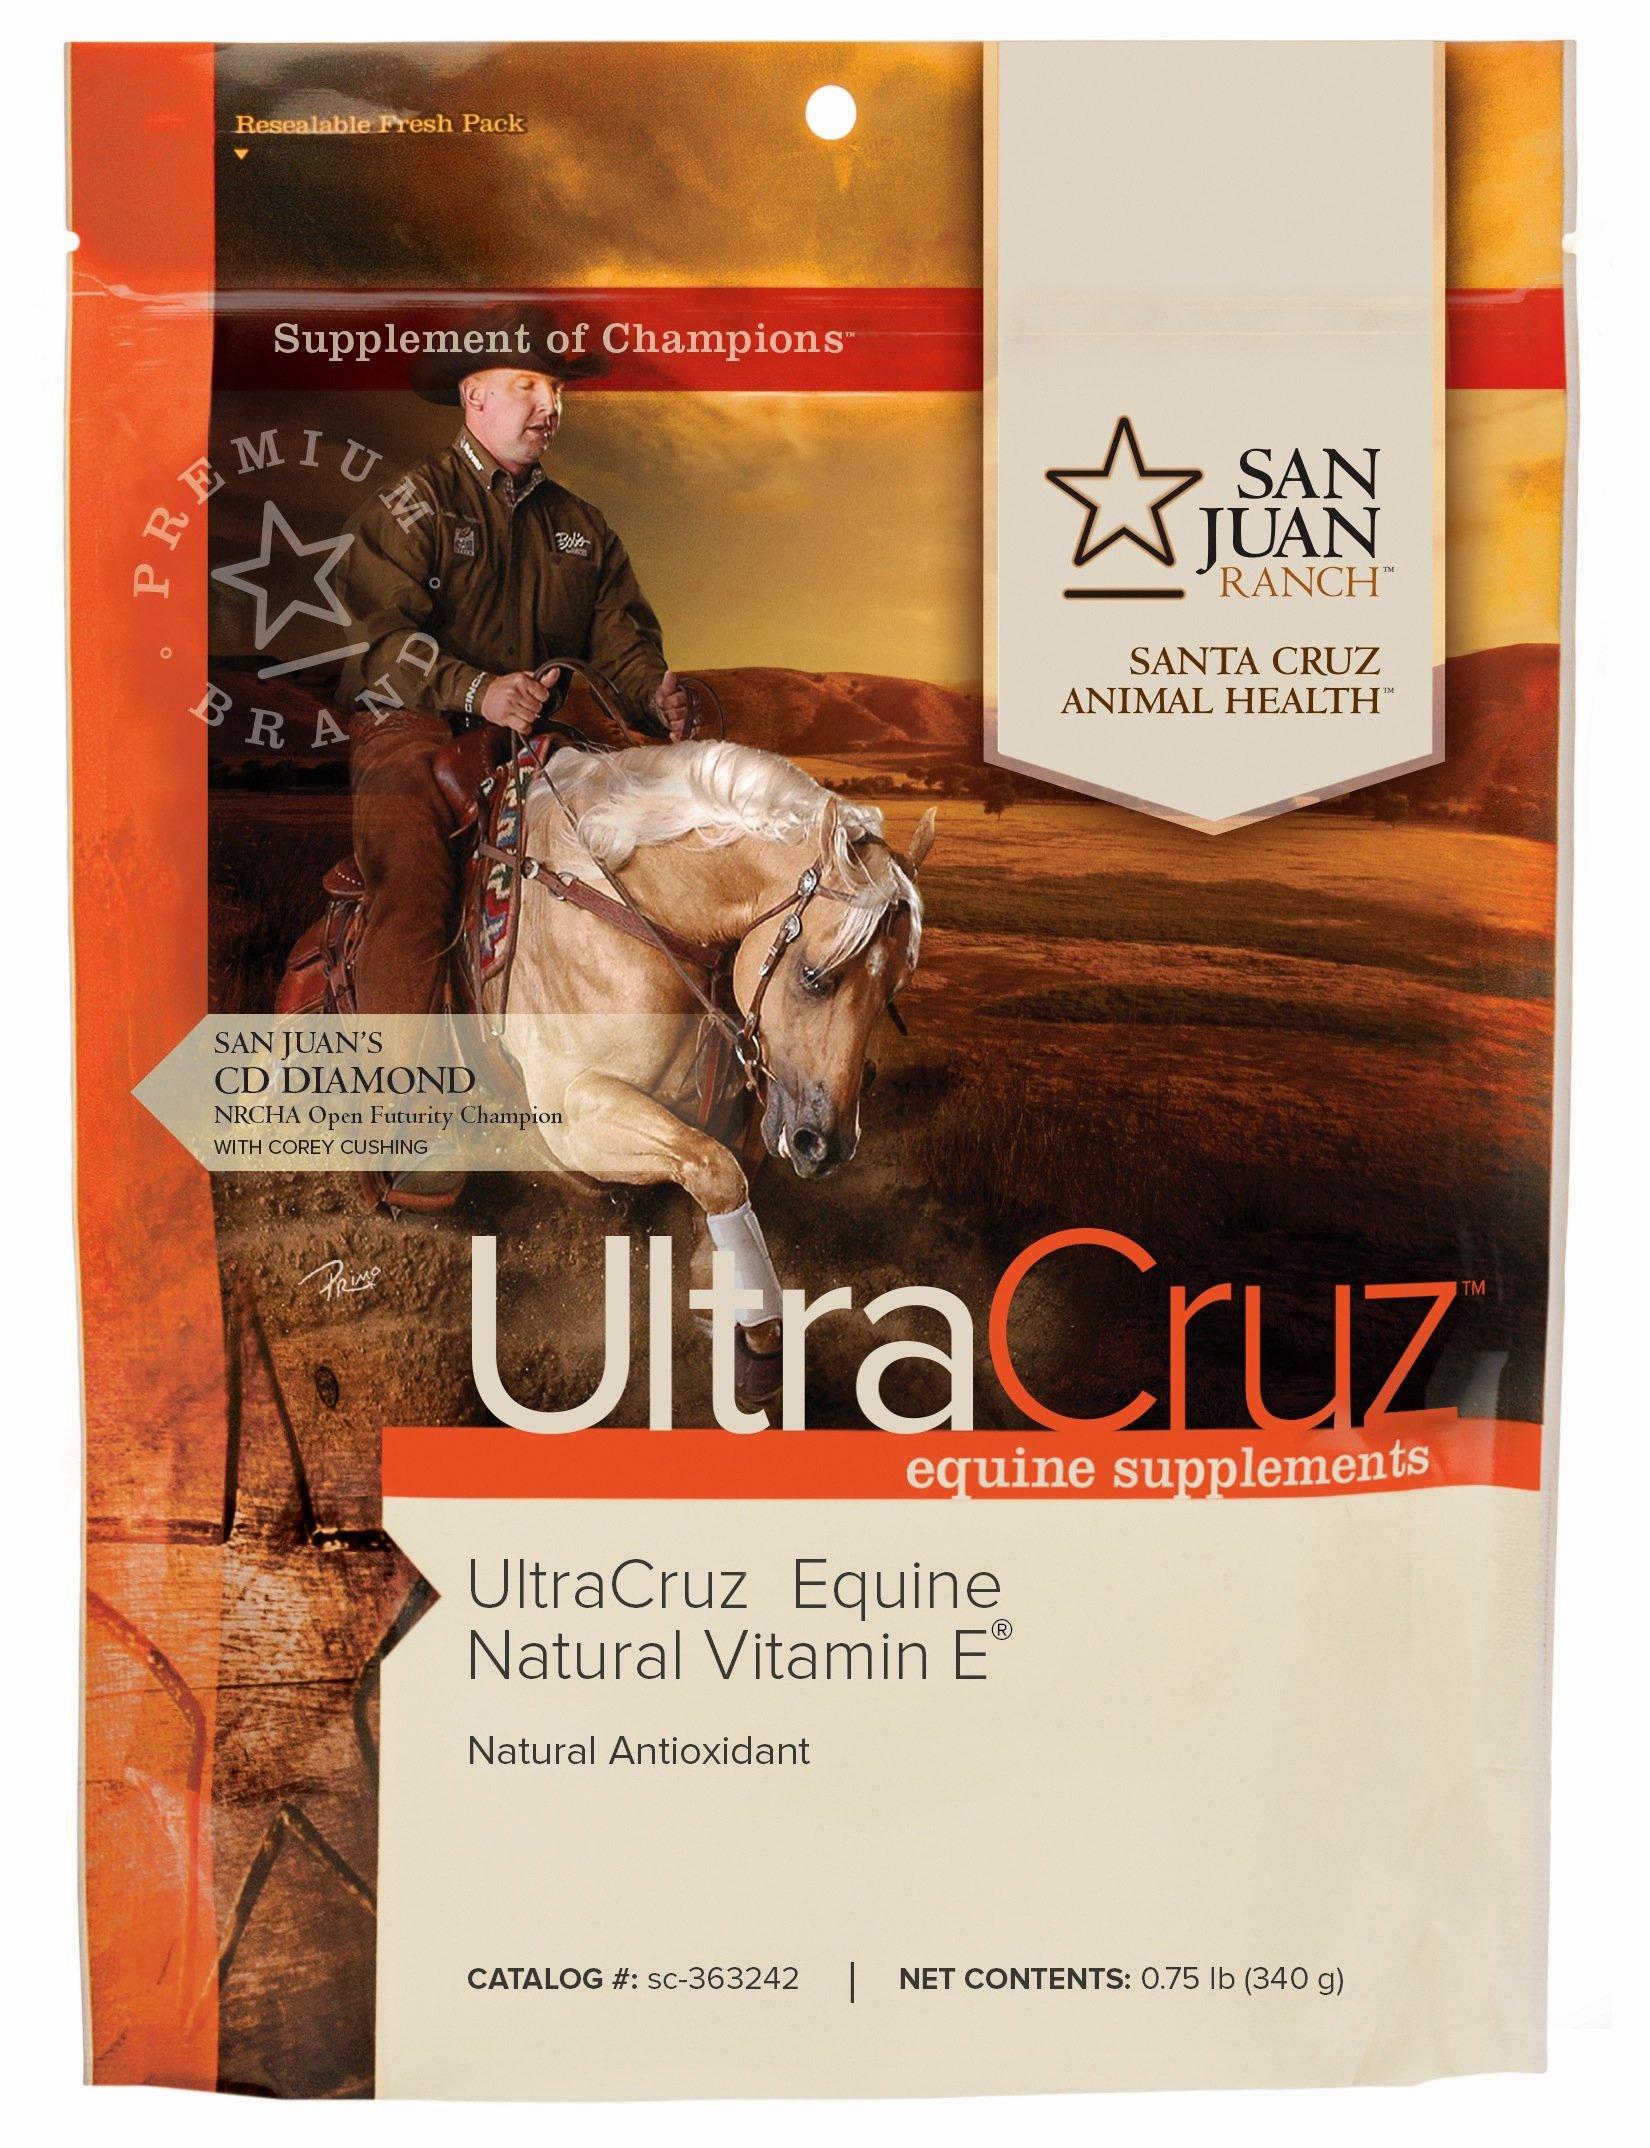 A bag of UltraCruz equine supplements, a natural vitamin E and antioxidant.